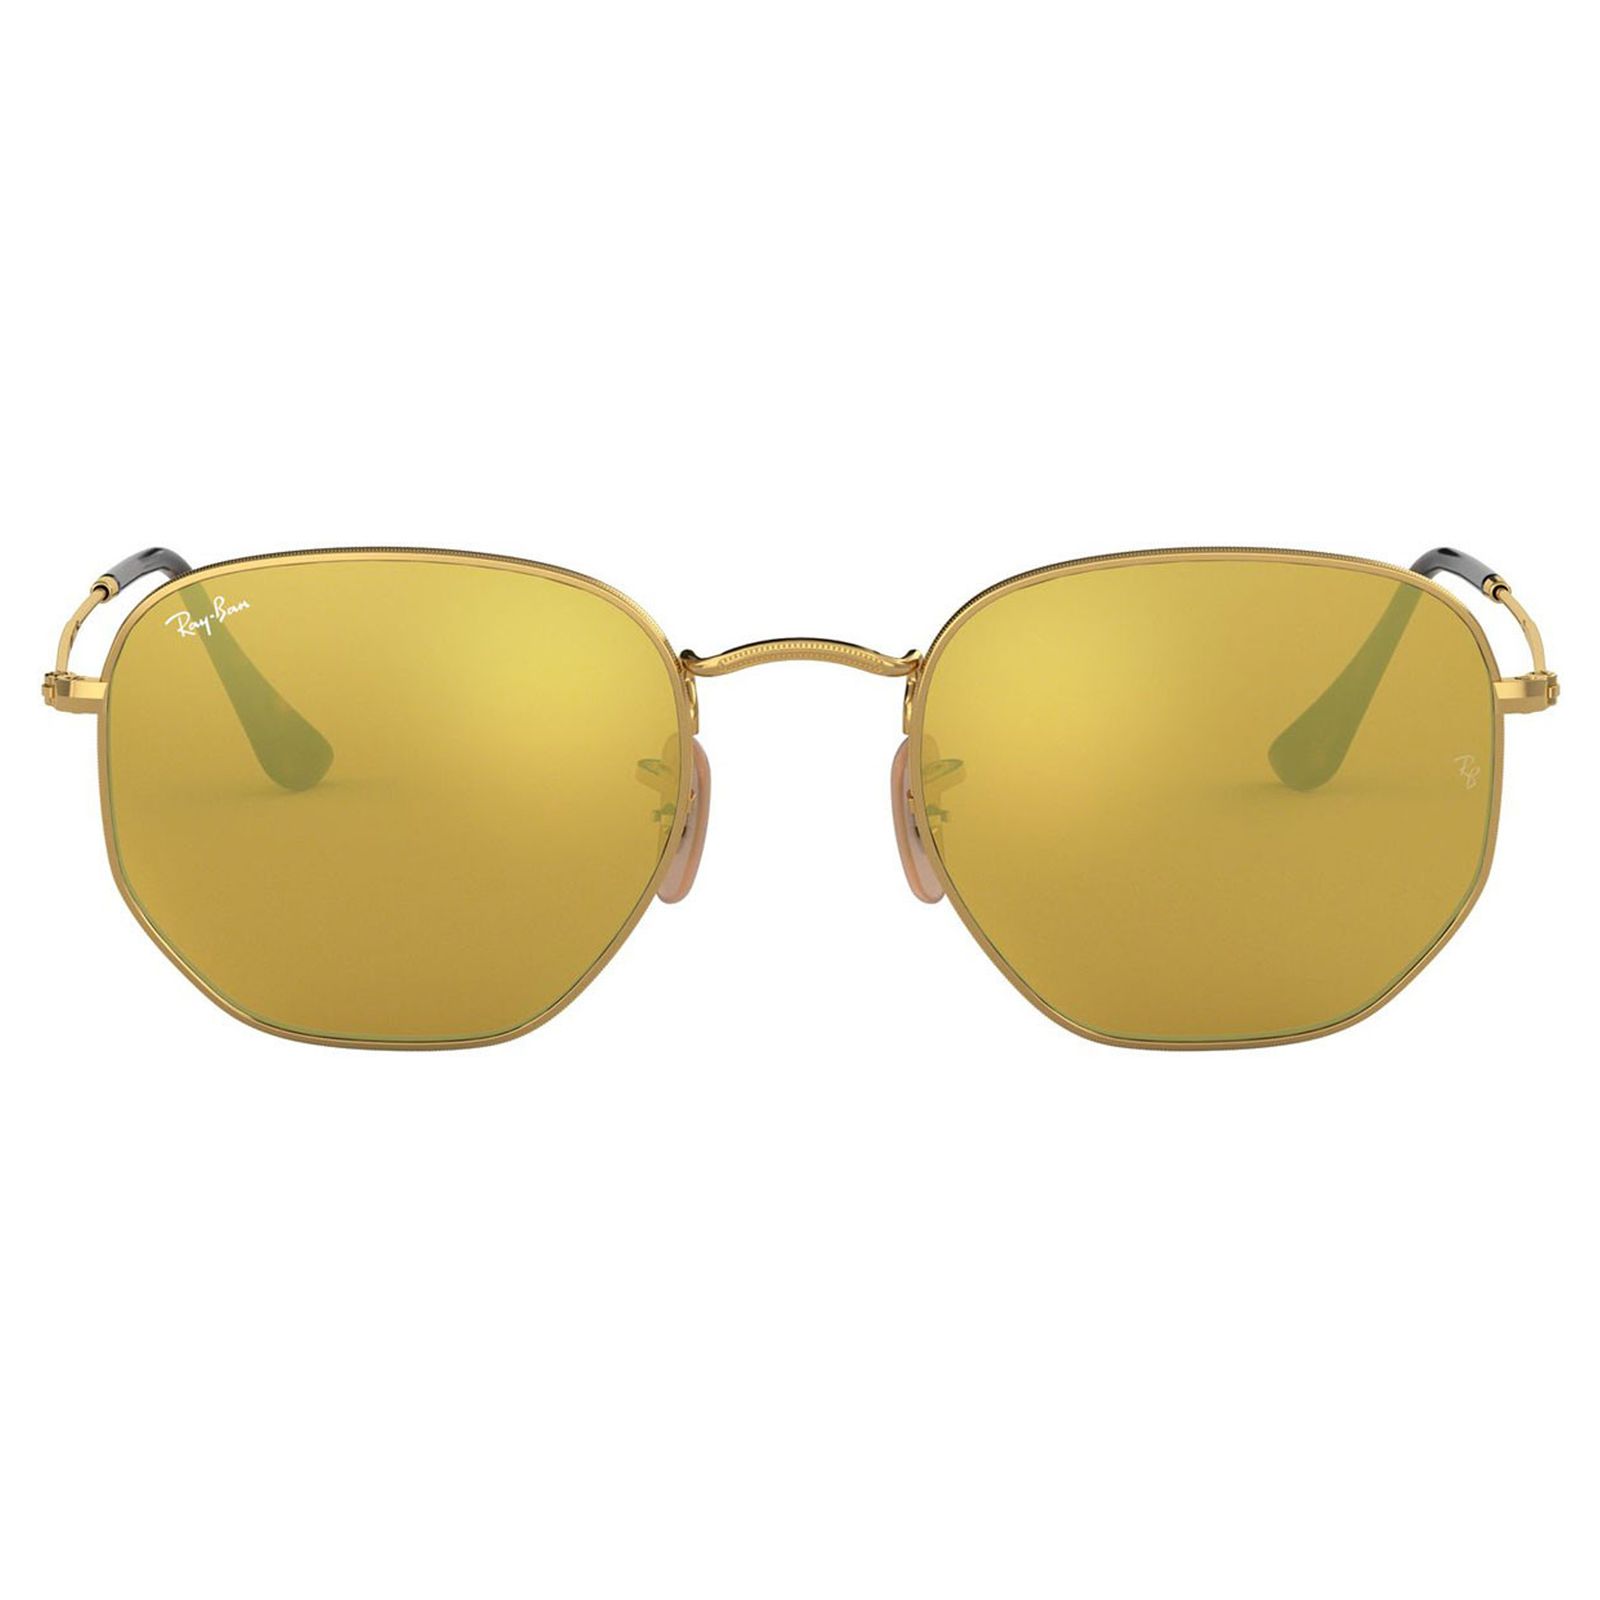 عینک آفتابی ری بن مدل 3548-001/93-51 - طلایی - 1